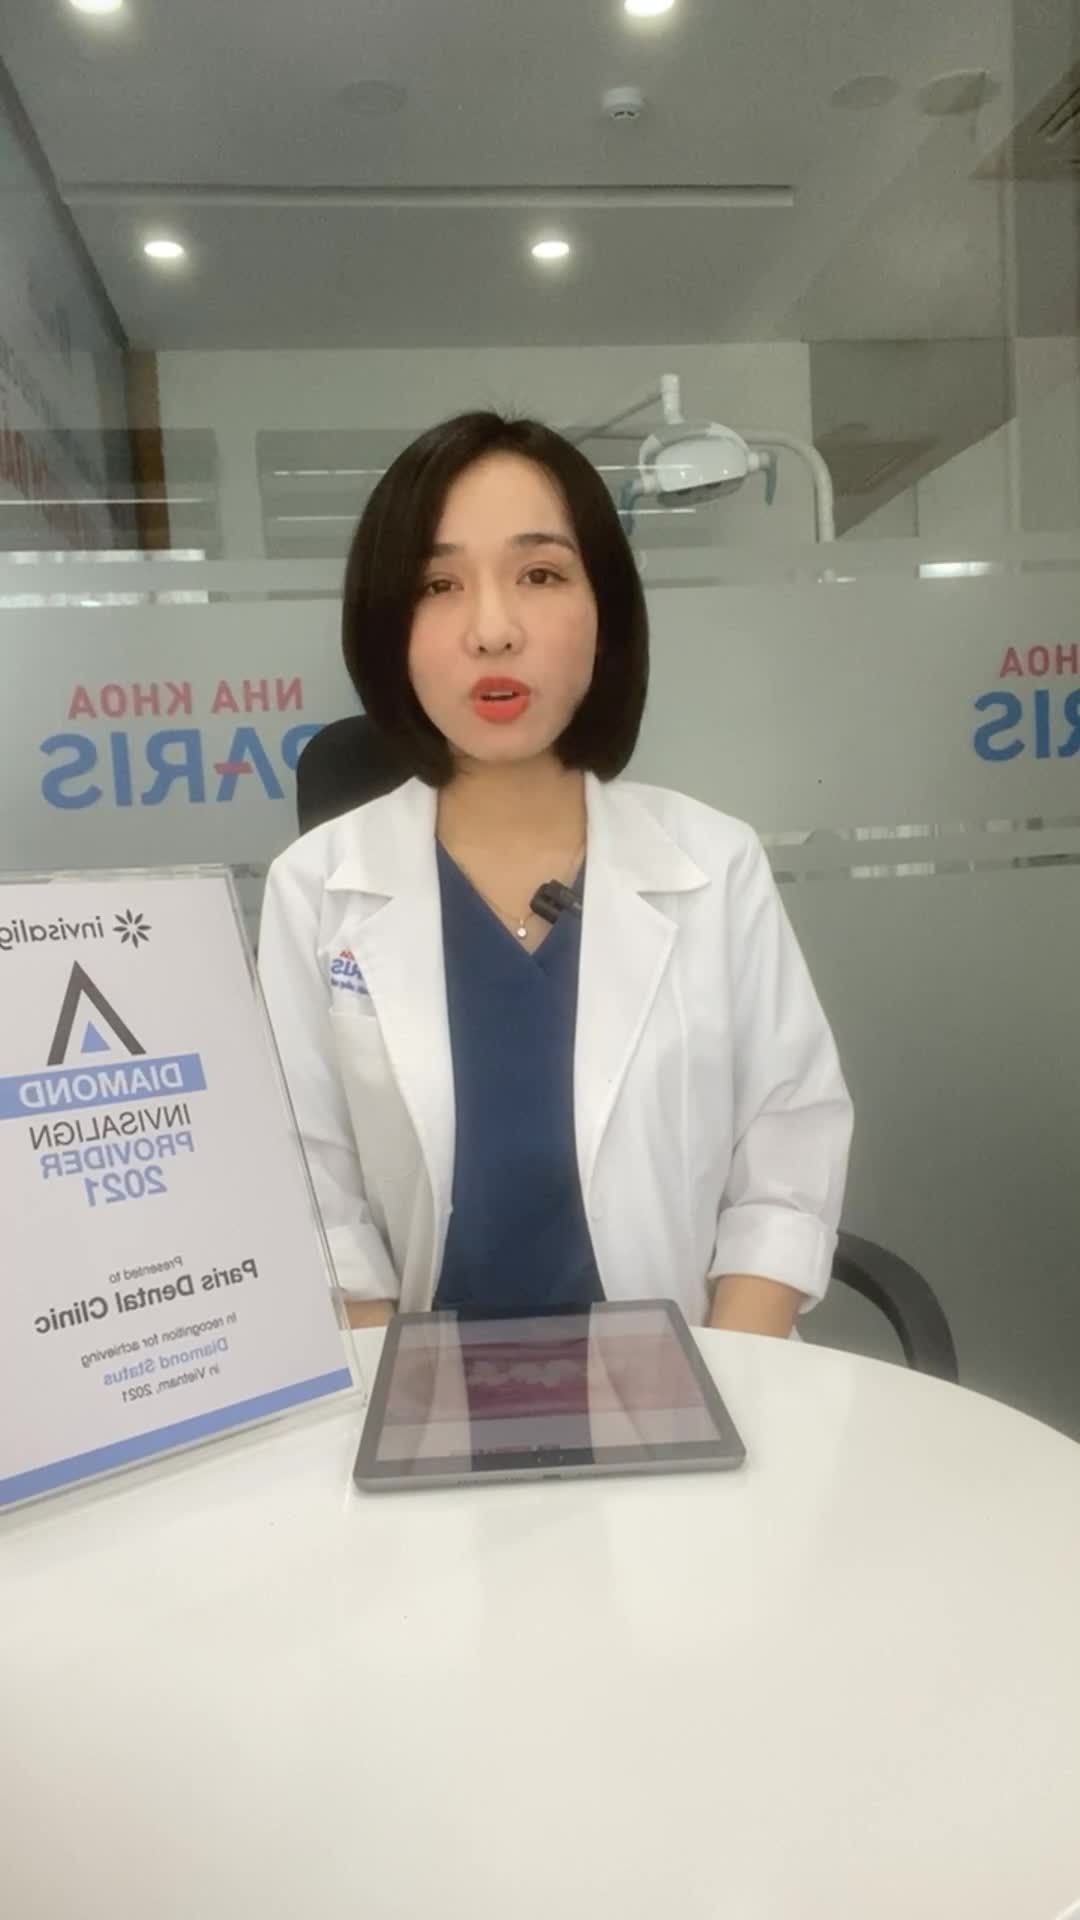 Kế hoạch điều trị răng khấp khểnh bằng phương pháp chỉnh nha INVISALIGN được thực hiện bởi Bs Nguyễn Linh Trang